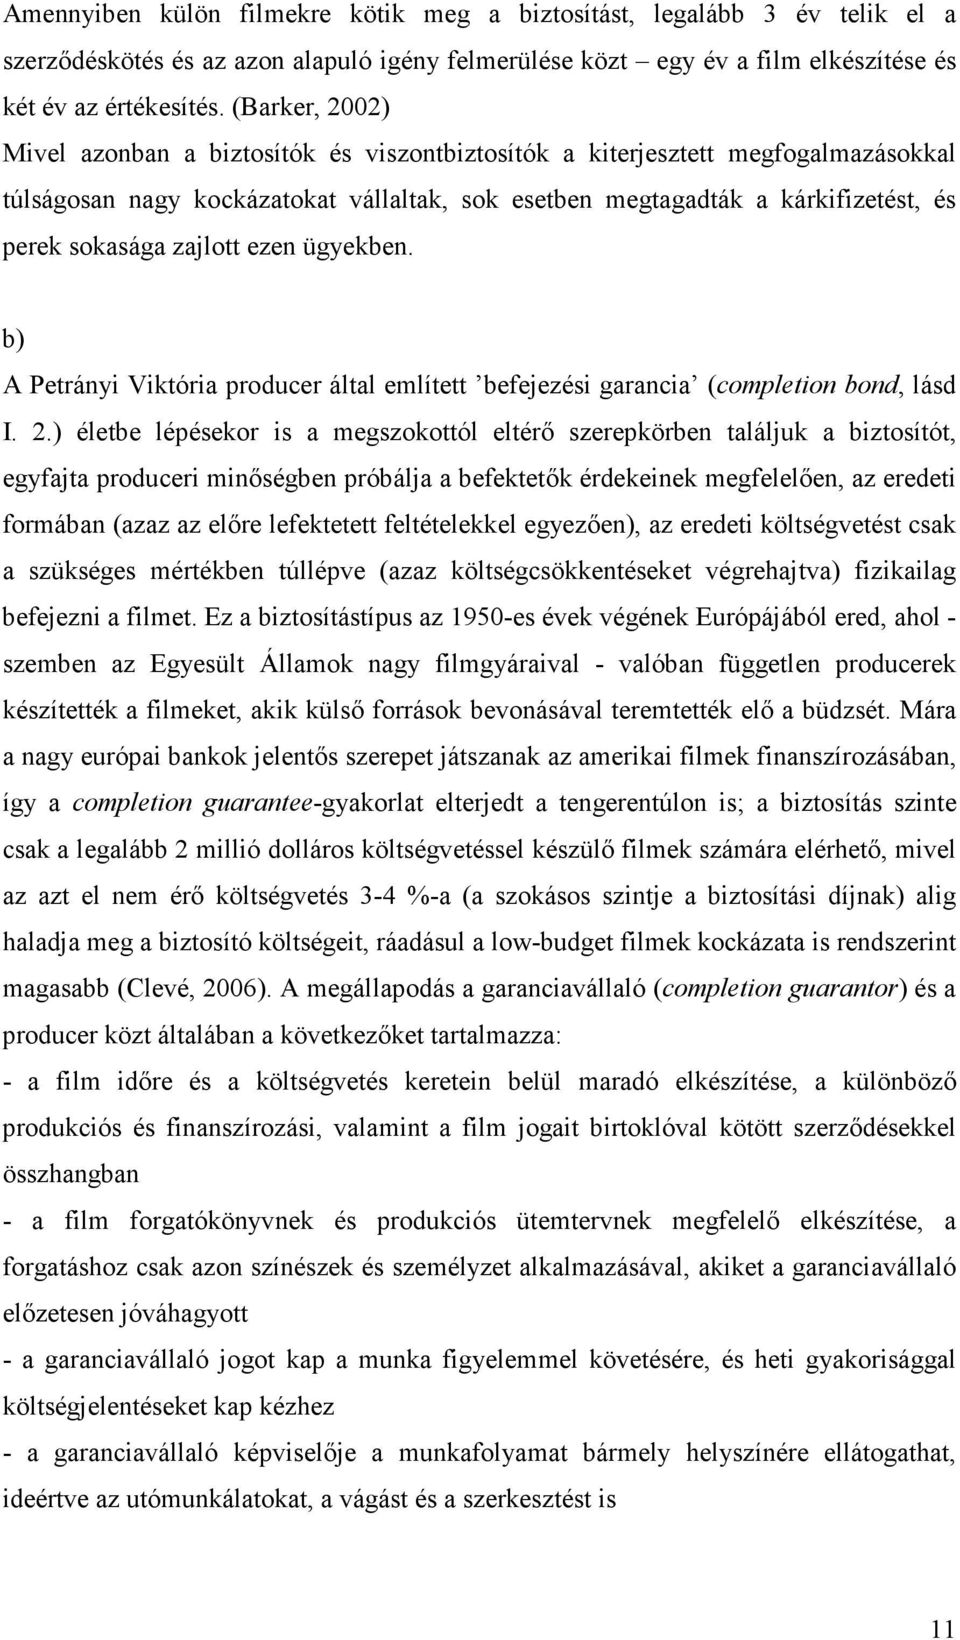 zajlott ezen ügyekben. b) A Petrányi Viktória producer által említett befejezési garancia (completion bond, lásd I. 2.